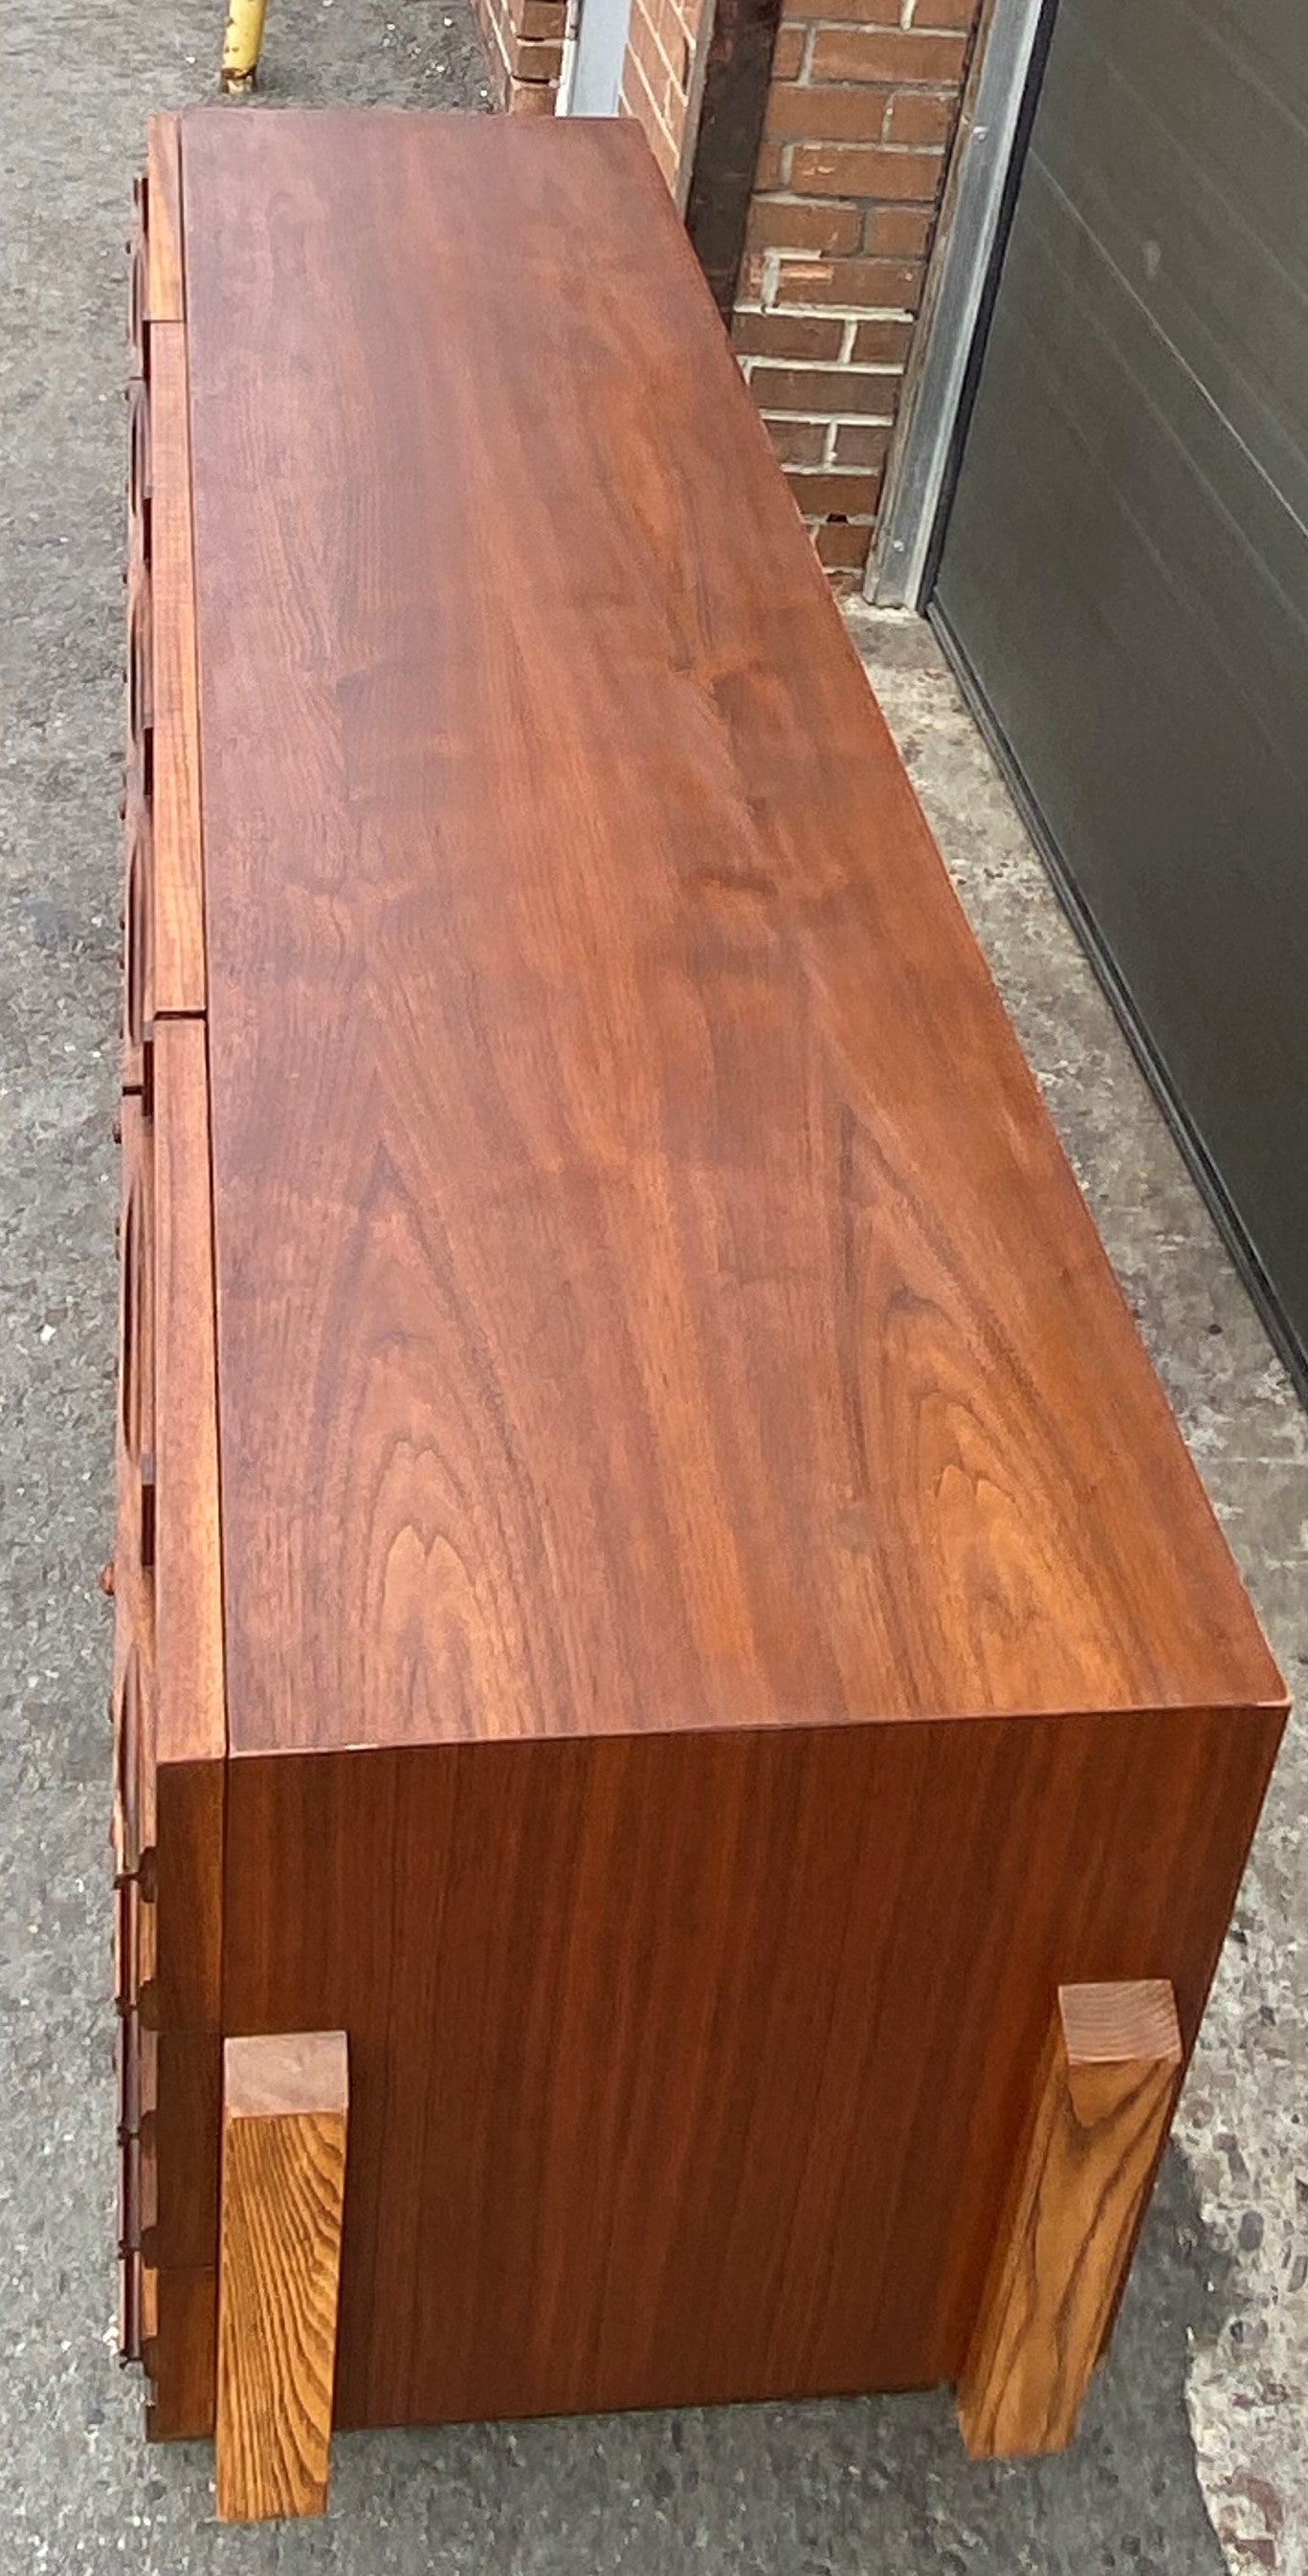 REFINISHED Rare Mid Century Modern Walnut Brutalist Credenza Dresser 78"